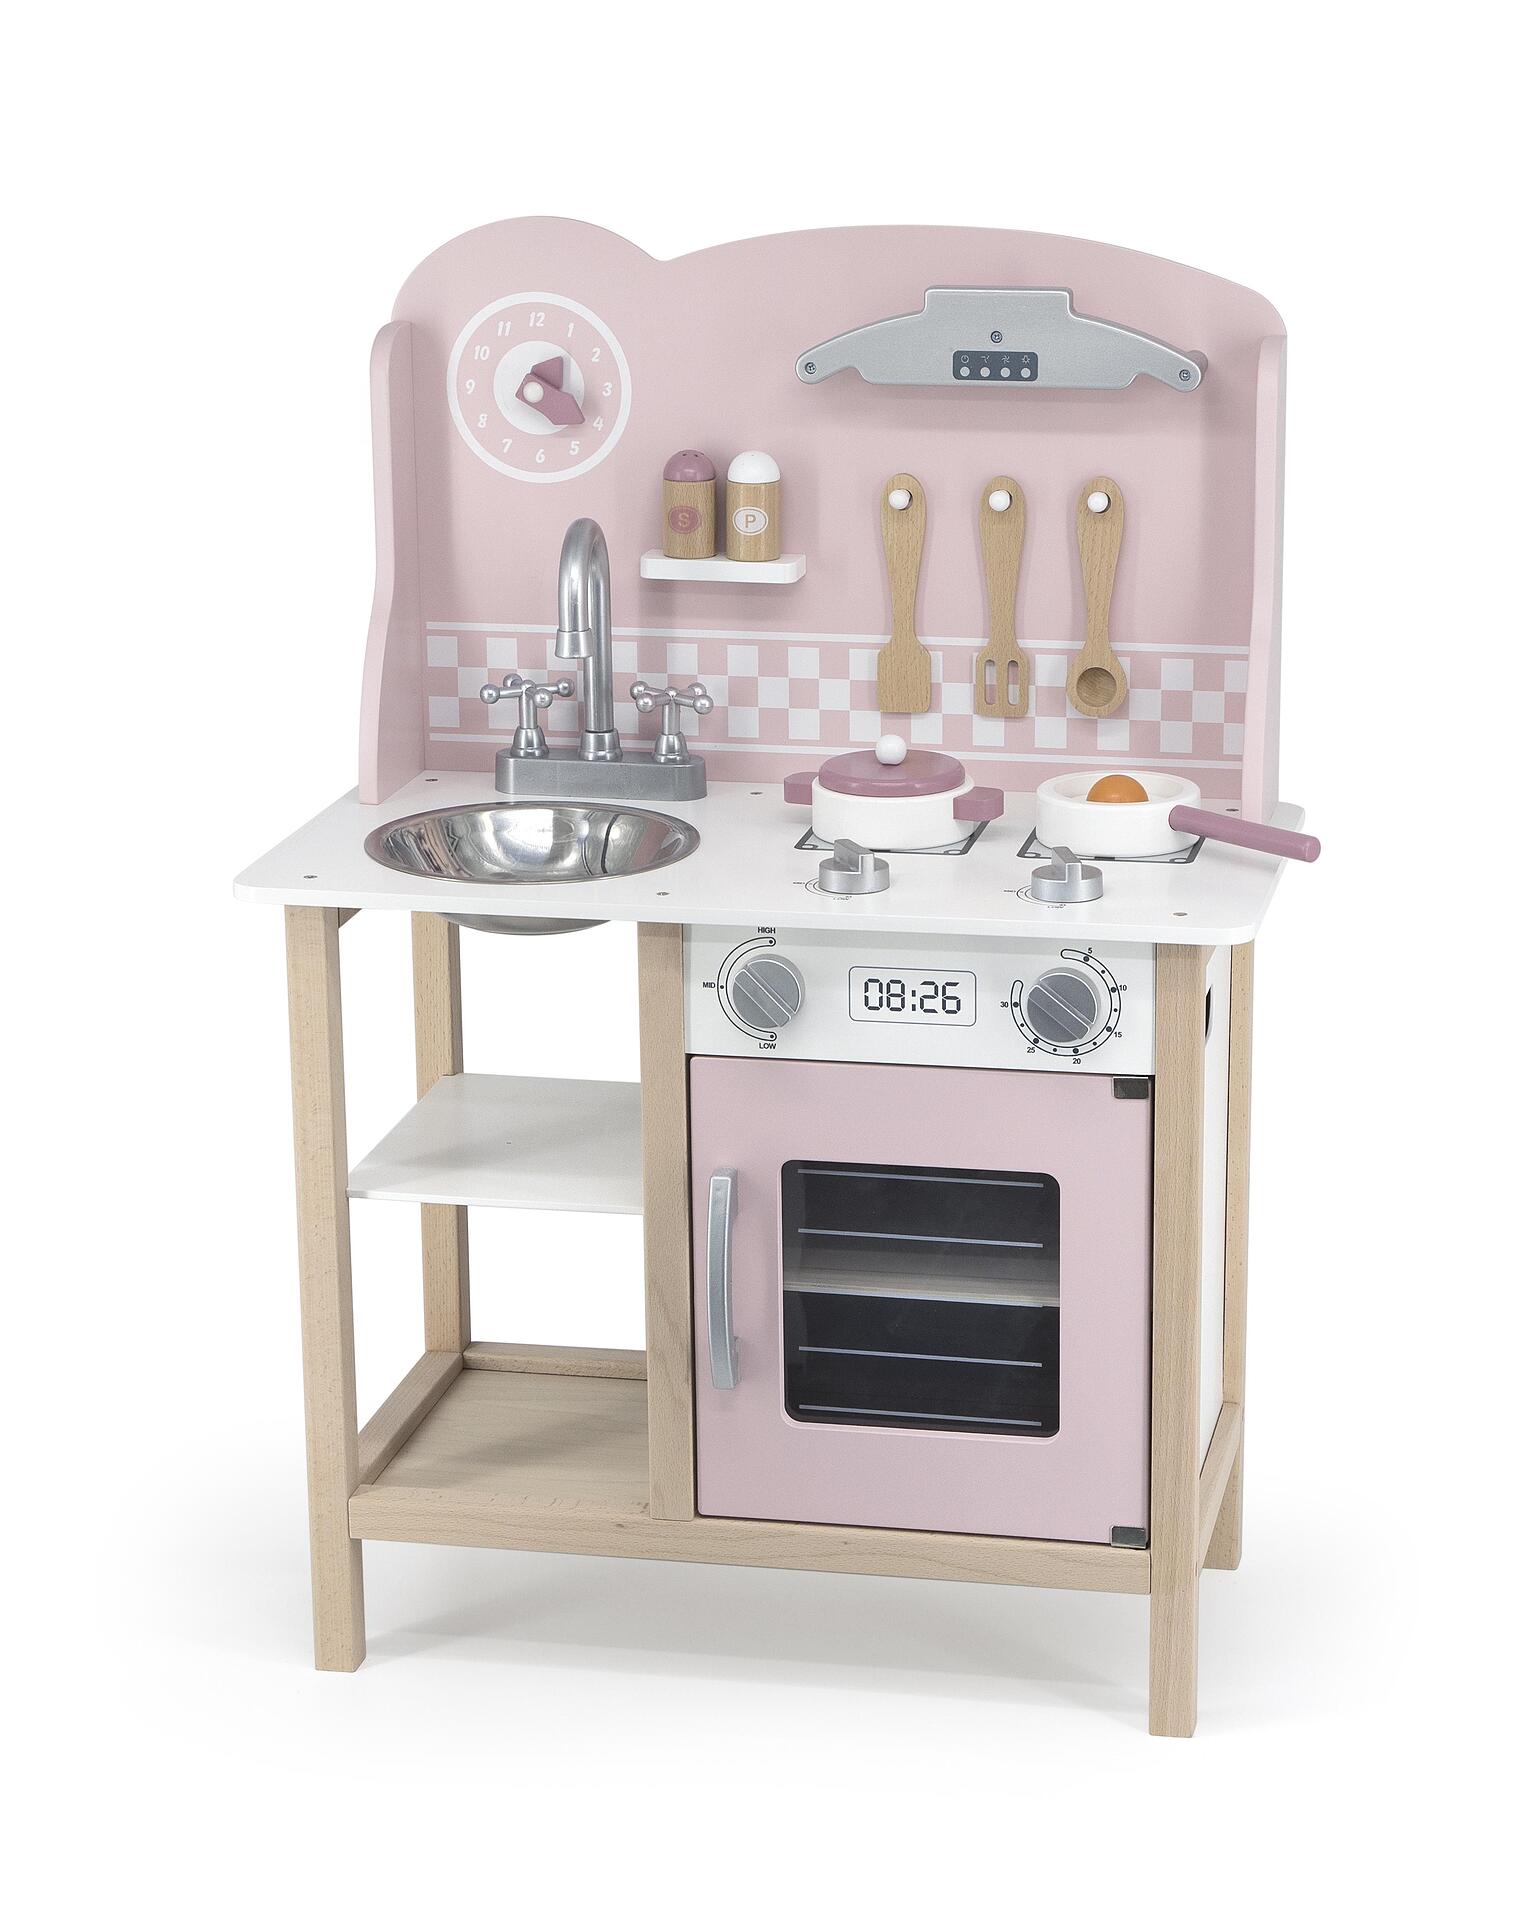 Розова кухня с аксесоари Polar B от Viga toys